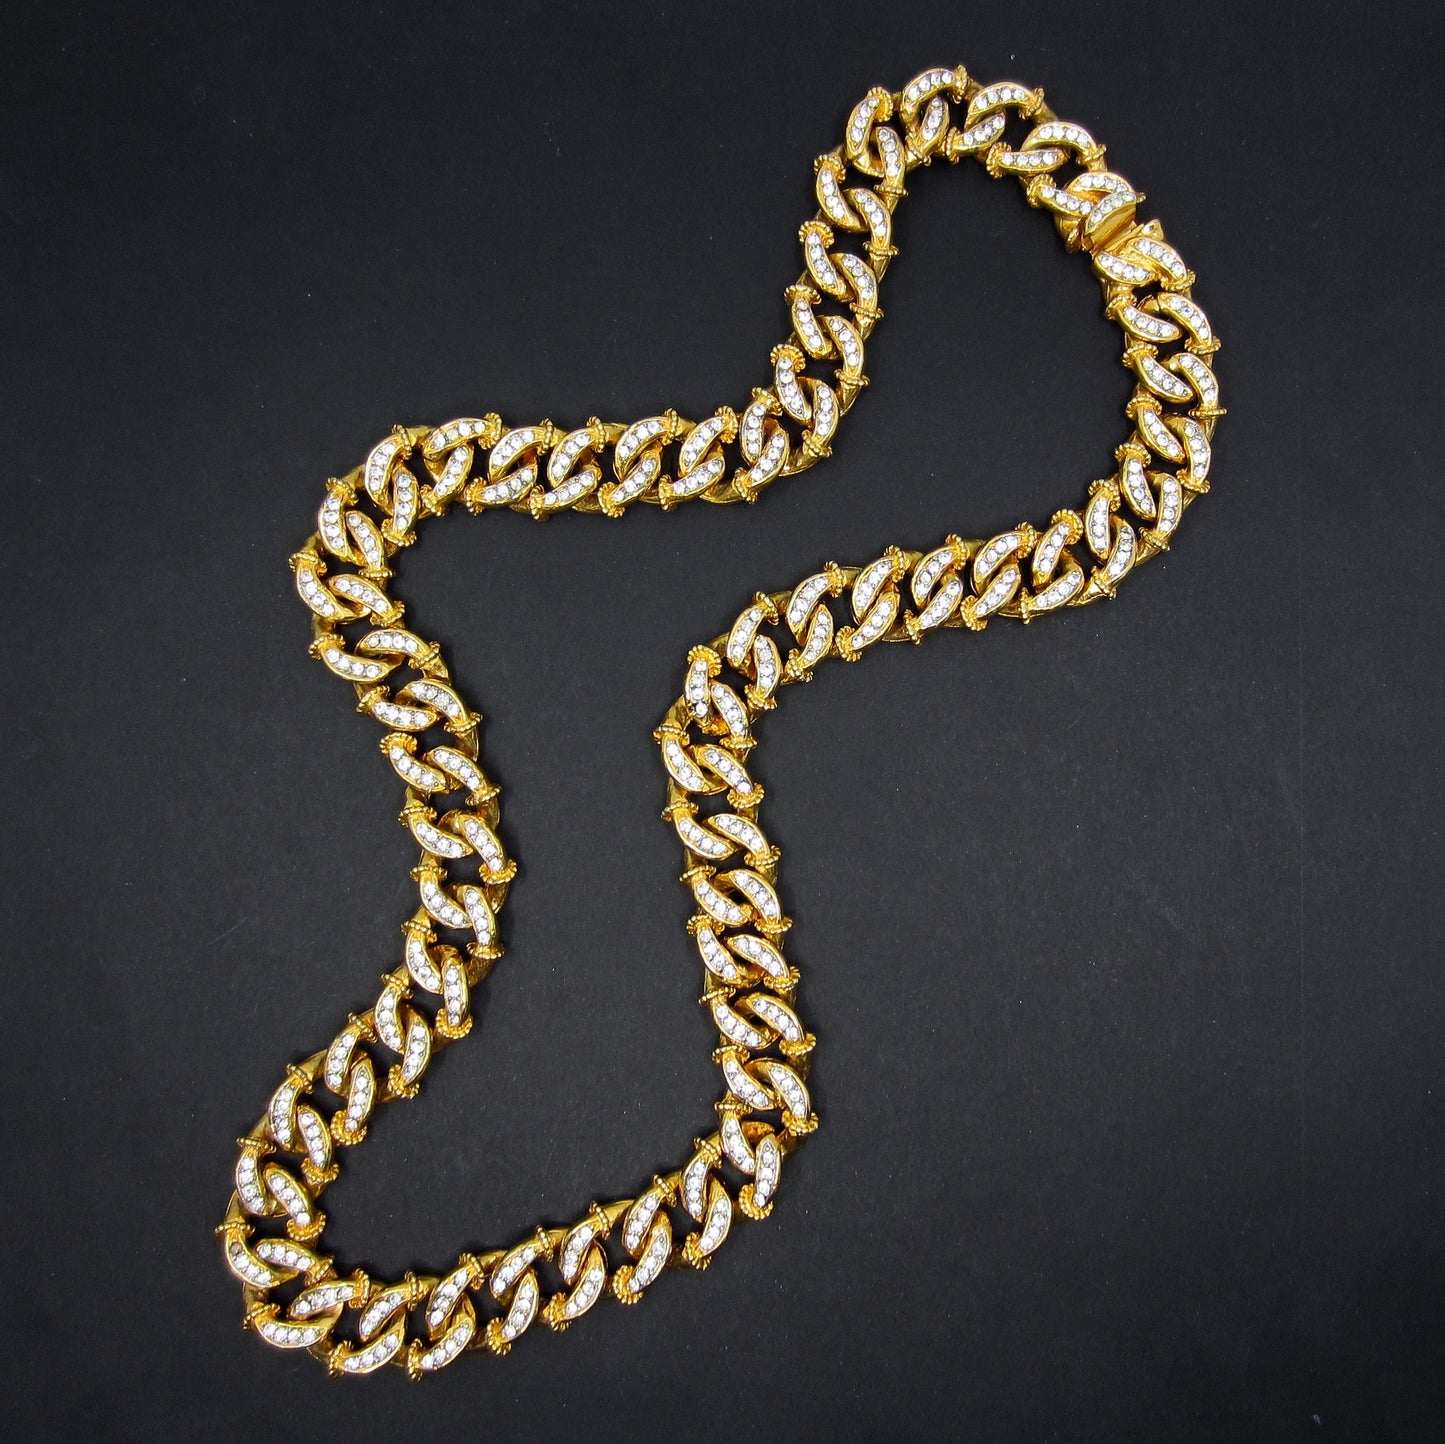 SOLD--Vintage Massive KJL Crystal Curb Link Chain Gold Plate c 1960’s